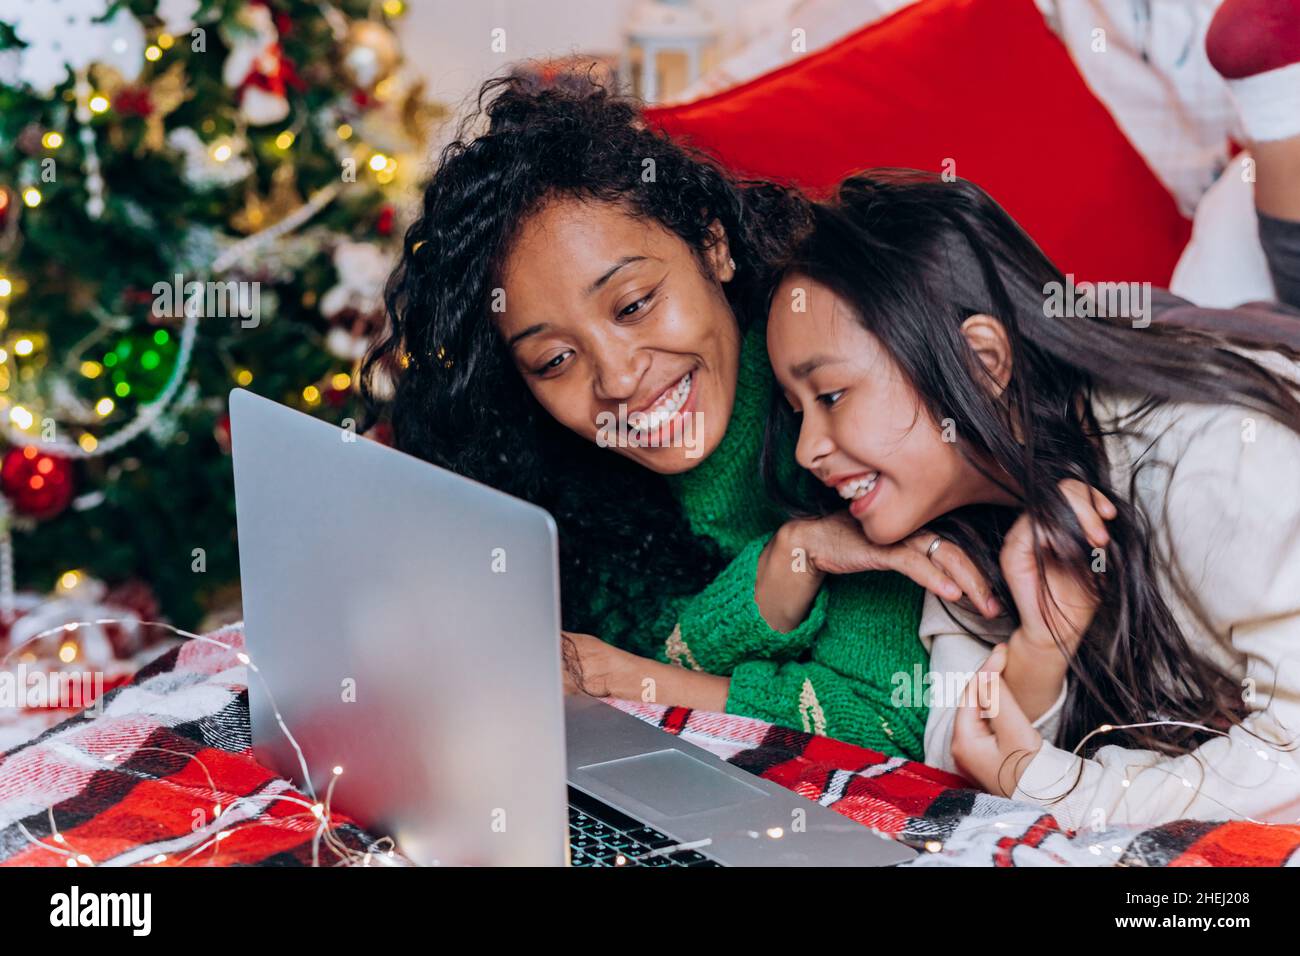 La madre negra de pelo rizado y la hija morena yacen en la cama cerca de decoraciones navideñas y se comunican mediante videollamada con el ordenador portátil Foto de stock